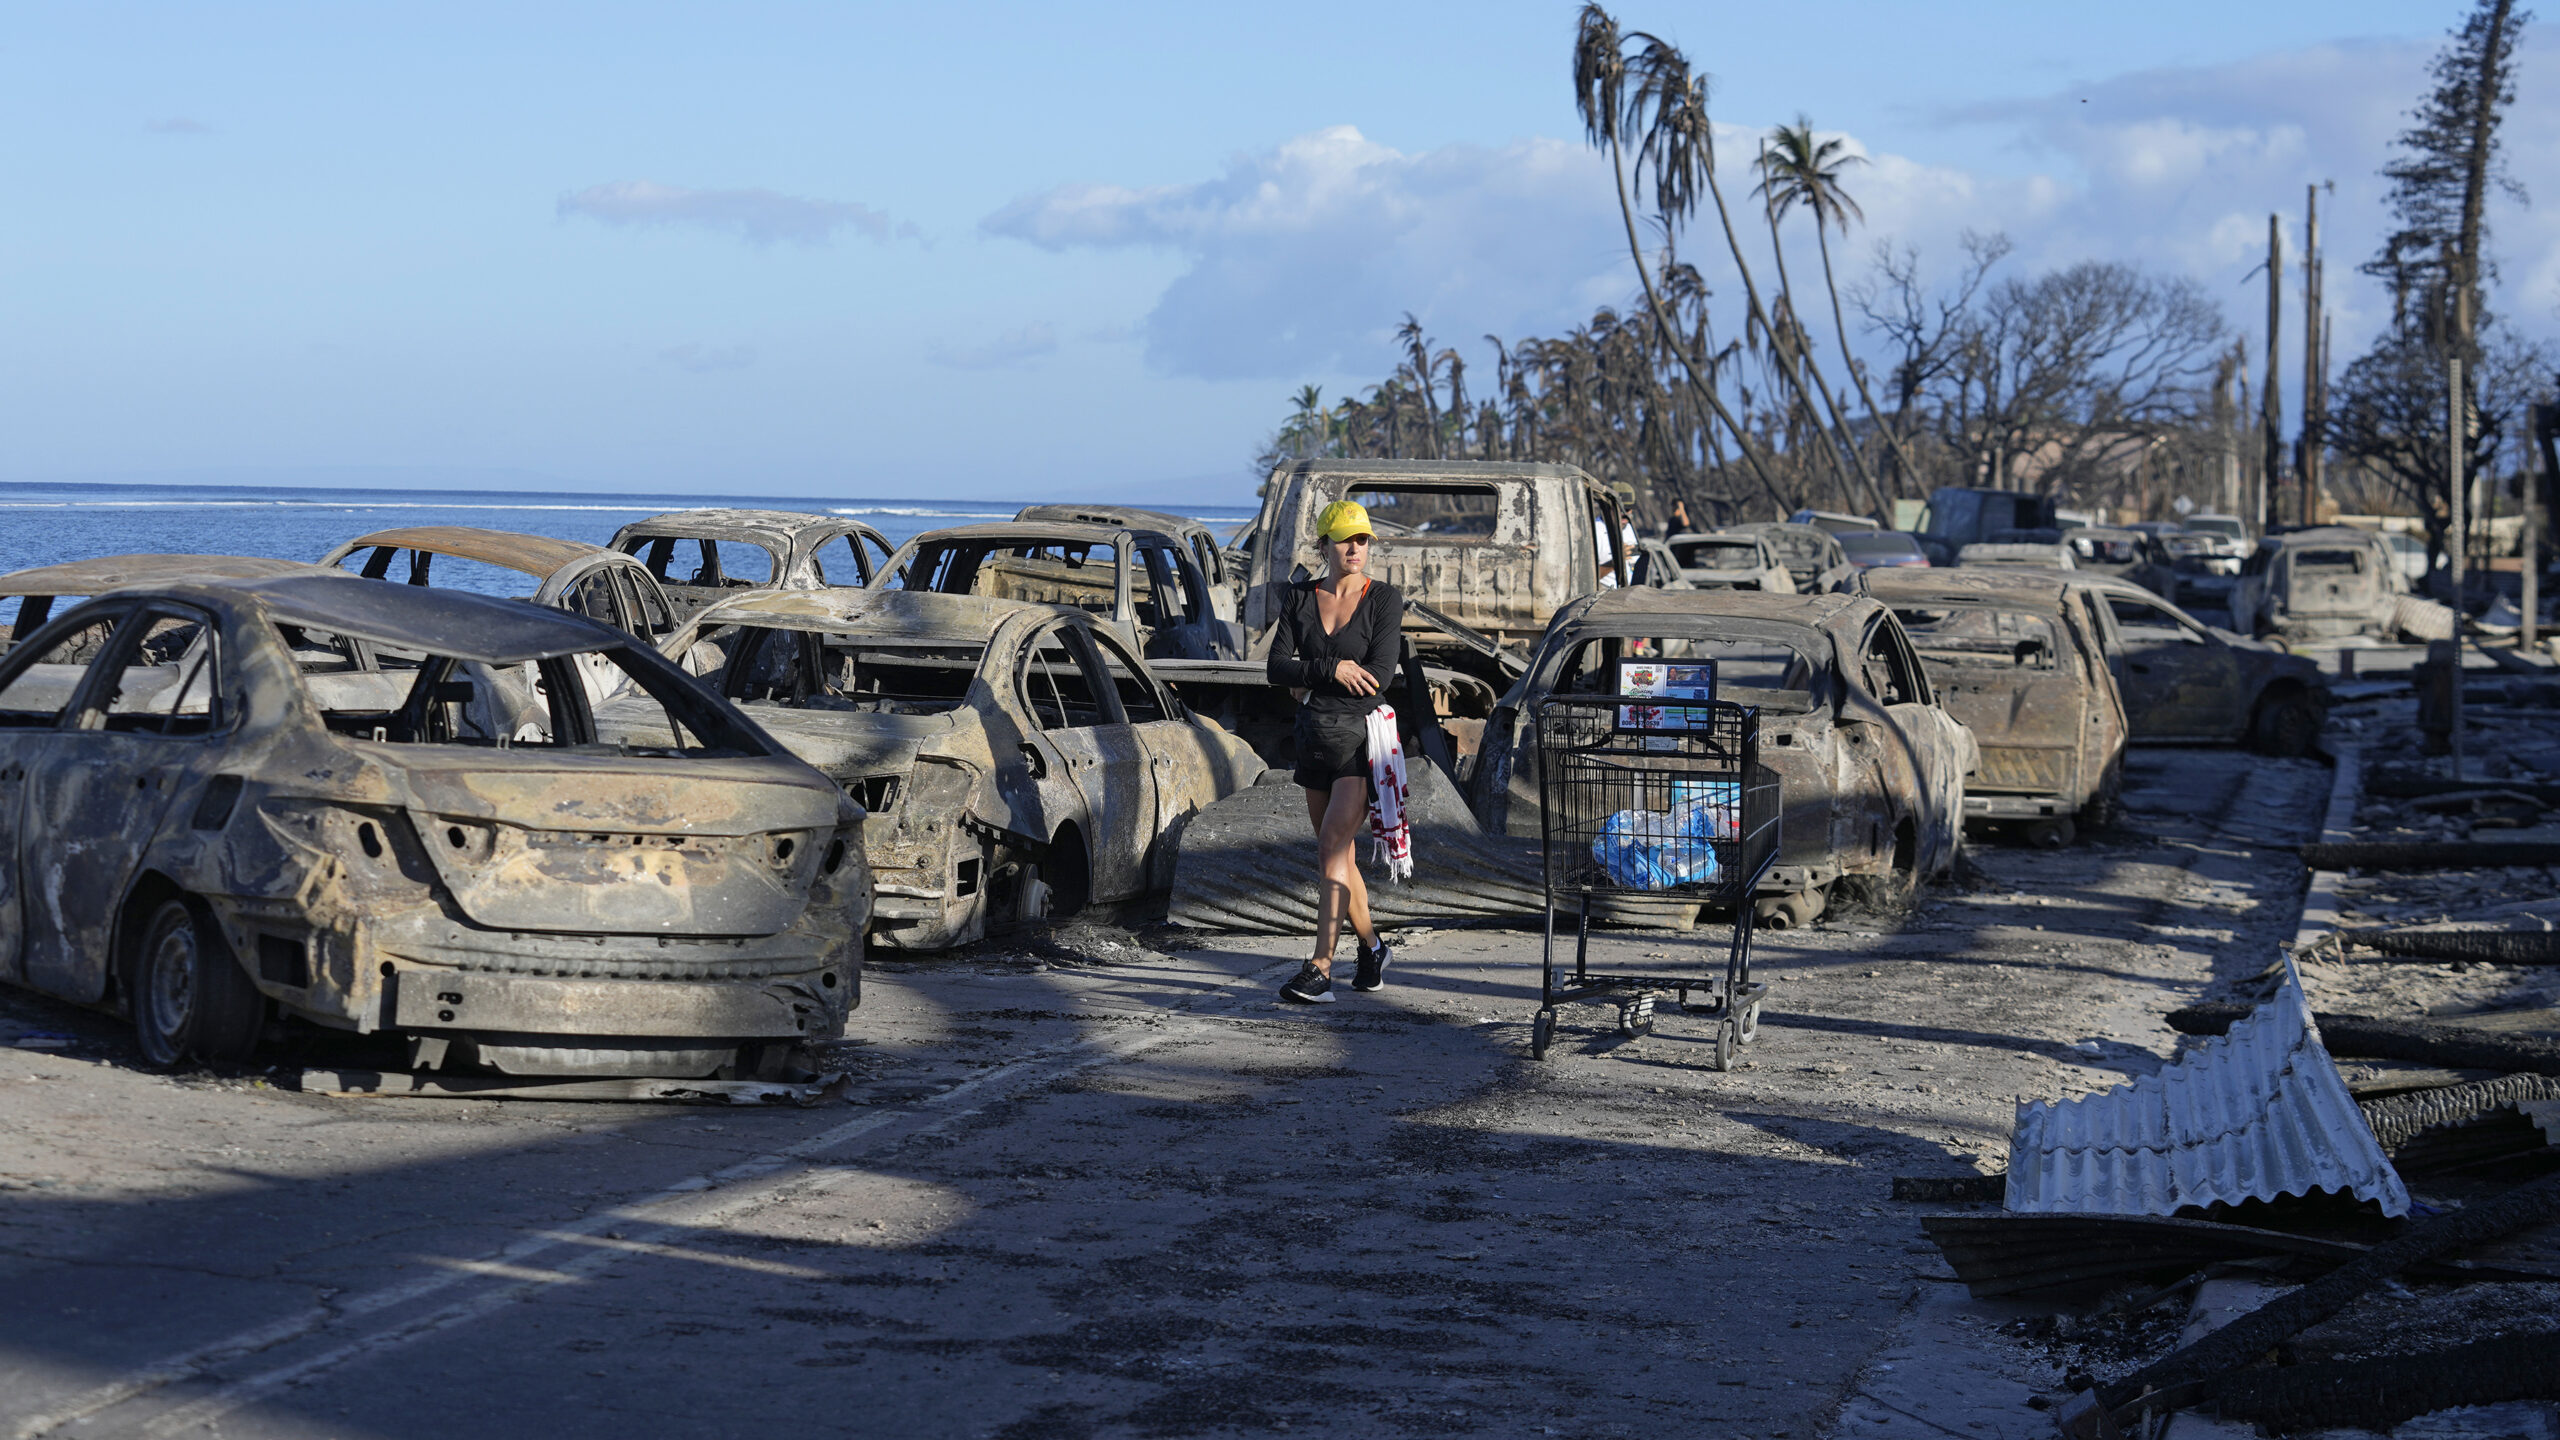 Ausgebrannte Autos, verbrannte Bäume, zerstörte Häuser: Die Flammen auf Maui hinterlassen eine Spur der Verwüstung.